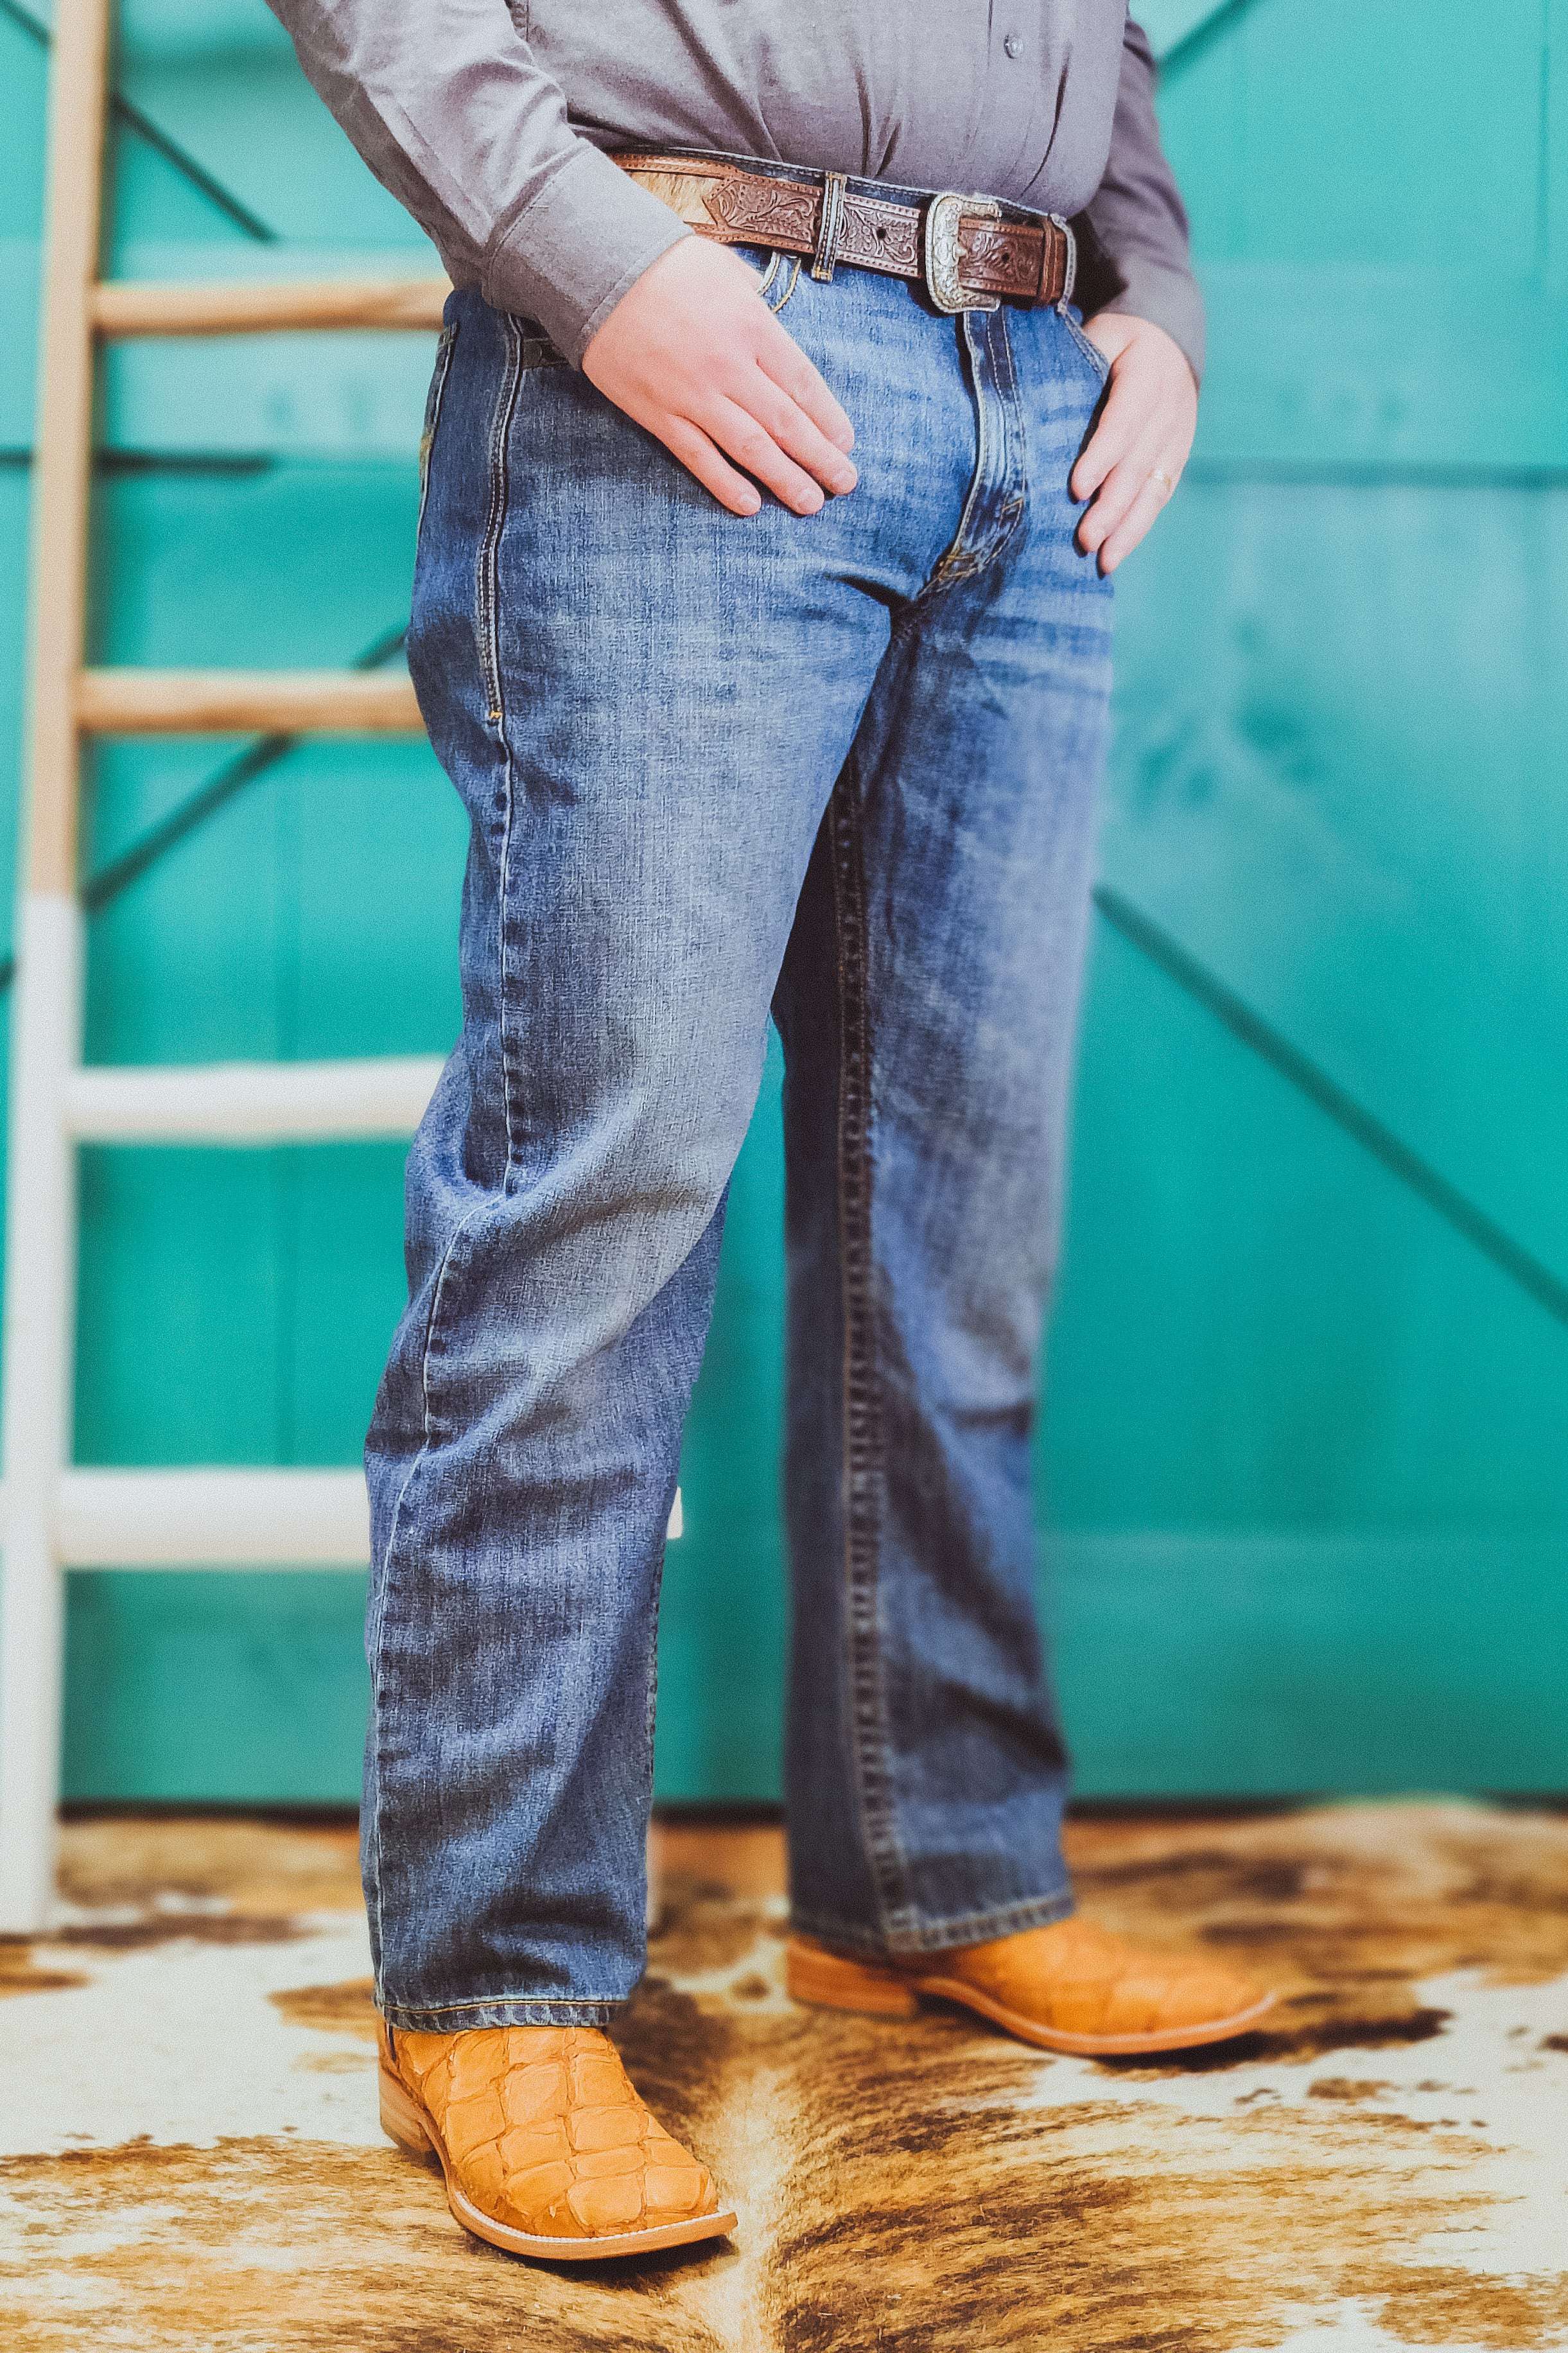 Wrangler® Relaxed Fit Straight Leg Denim Jeans